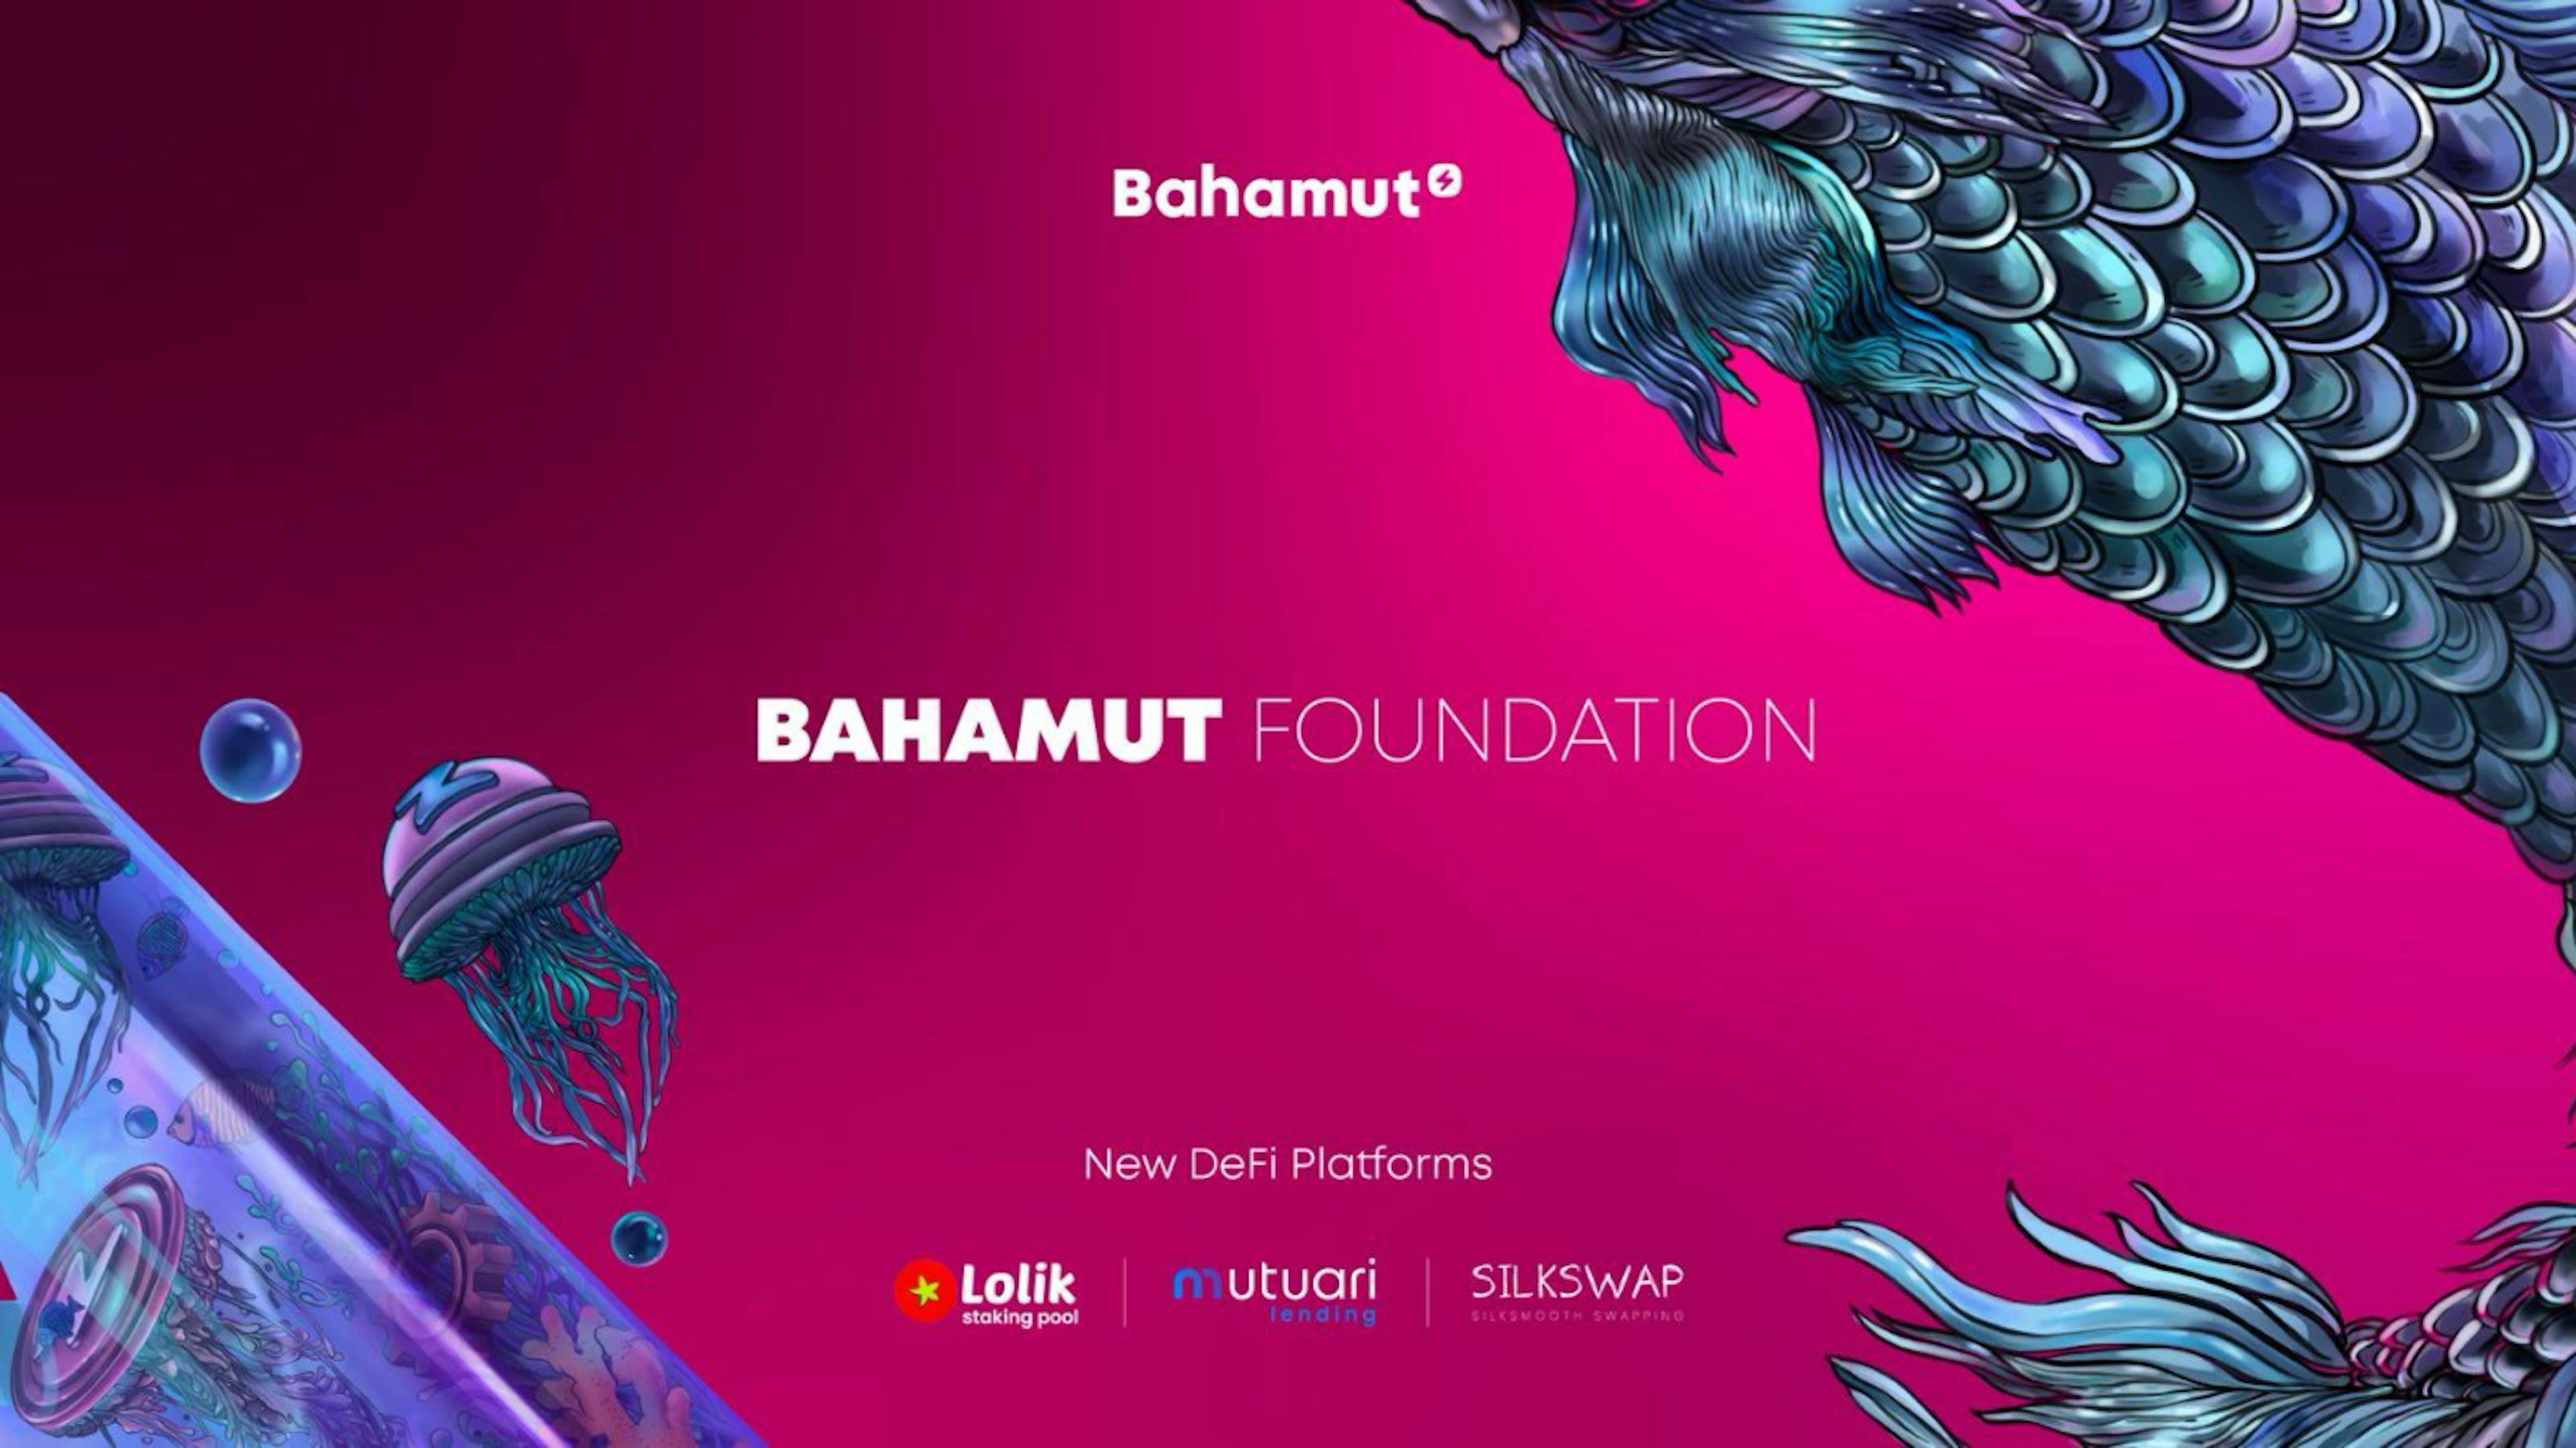 featured image - Bahamut Vakfı Üç DeFi Projesinin Lansmanını ve Bahamut Arena'nın Kazananlarını Açıkladı